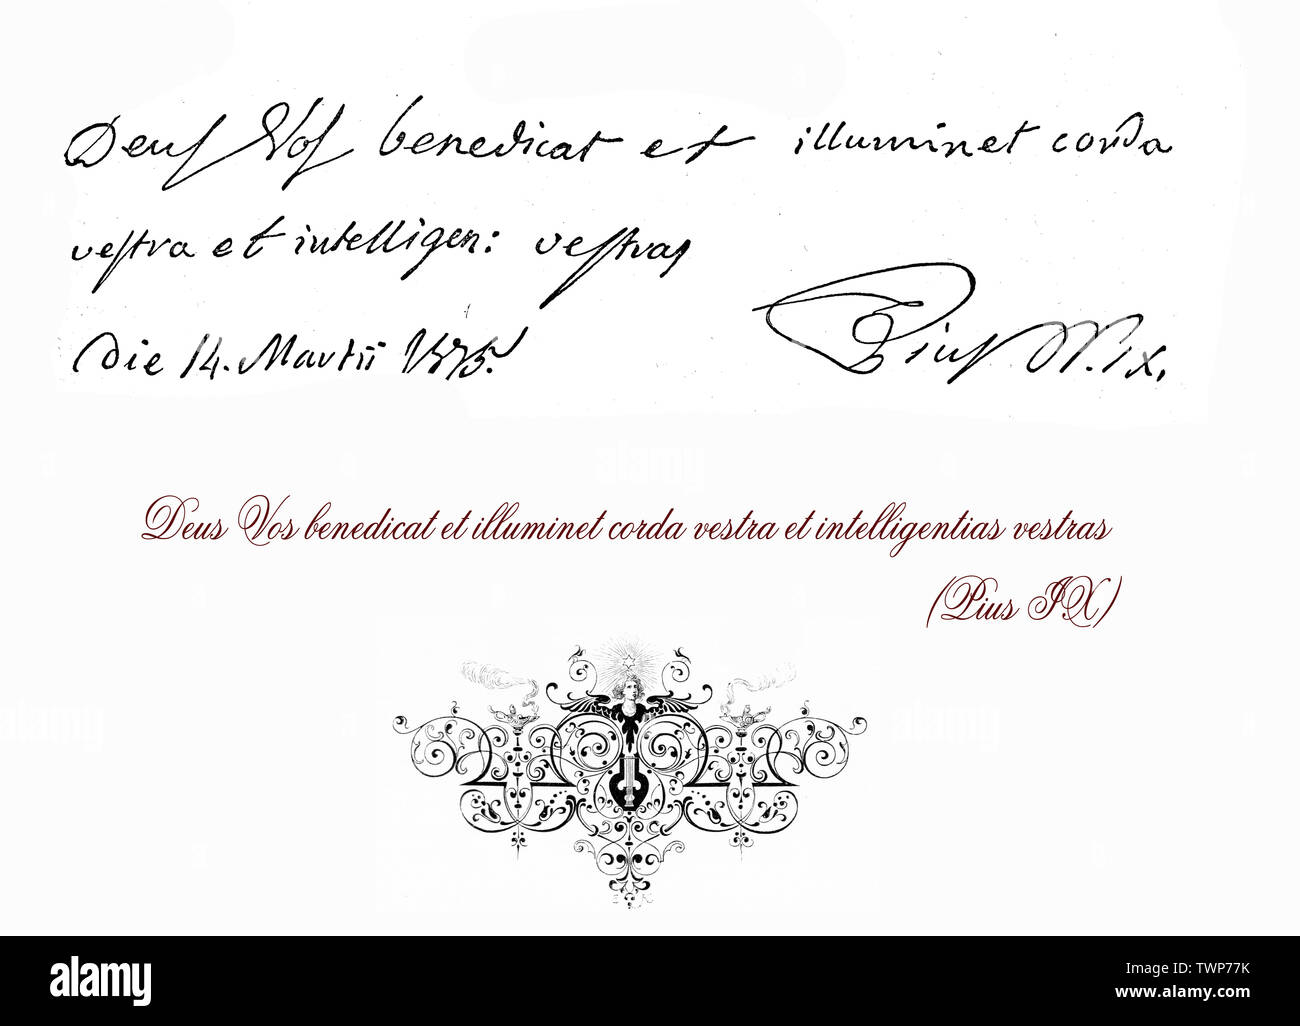 Scheda manoscritta in lingua latina con la benedizione di Papa Pio IX e il suo autografo Foto Stock